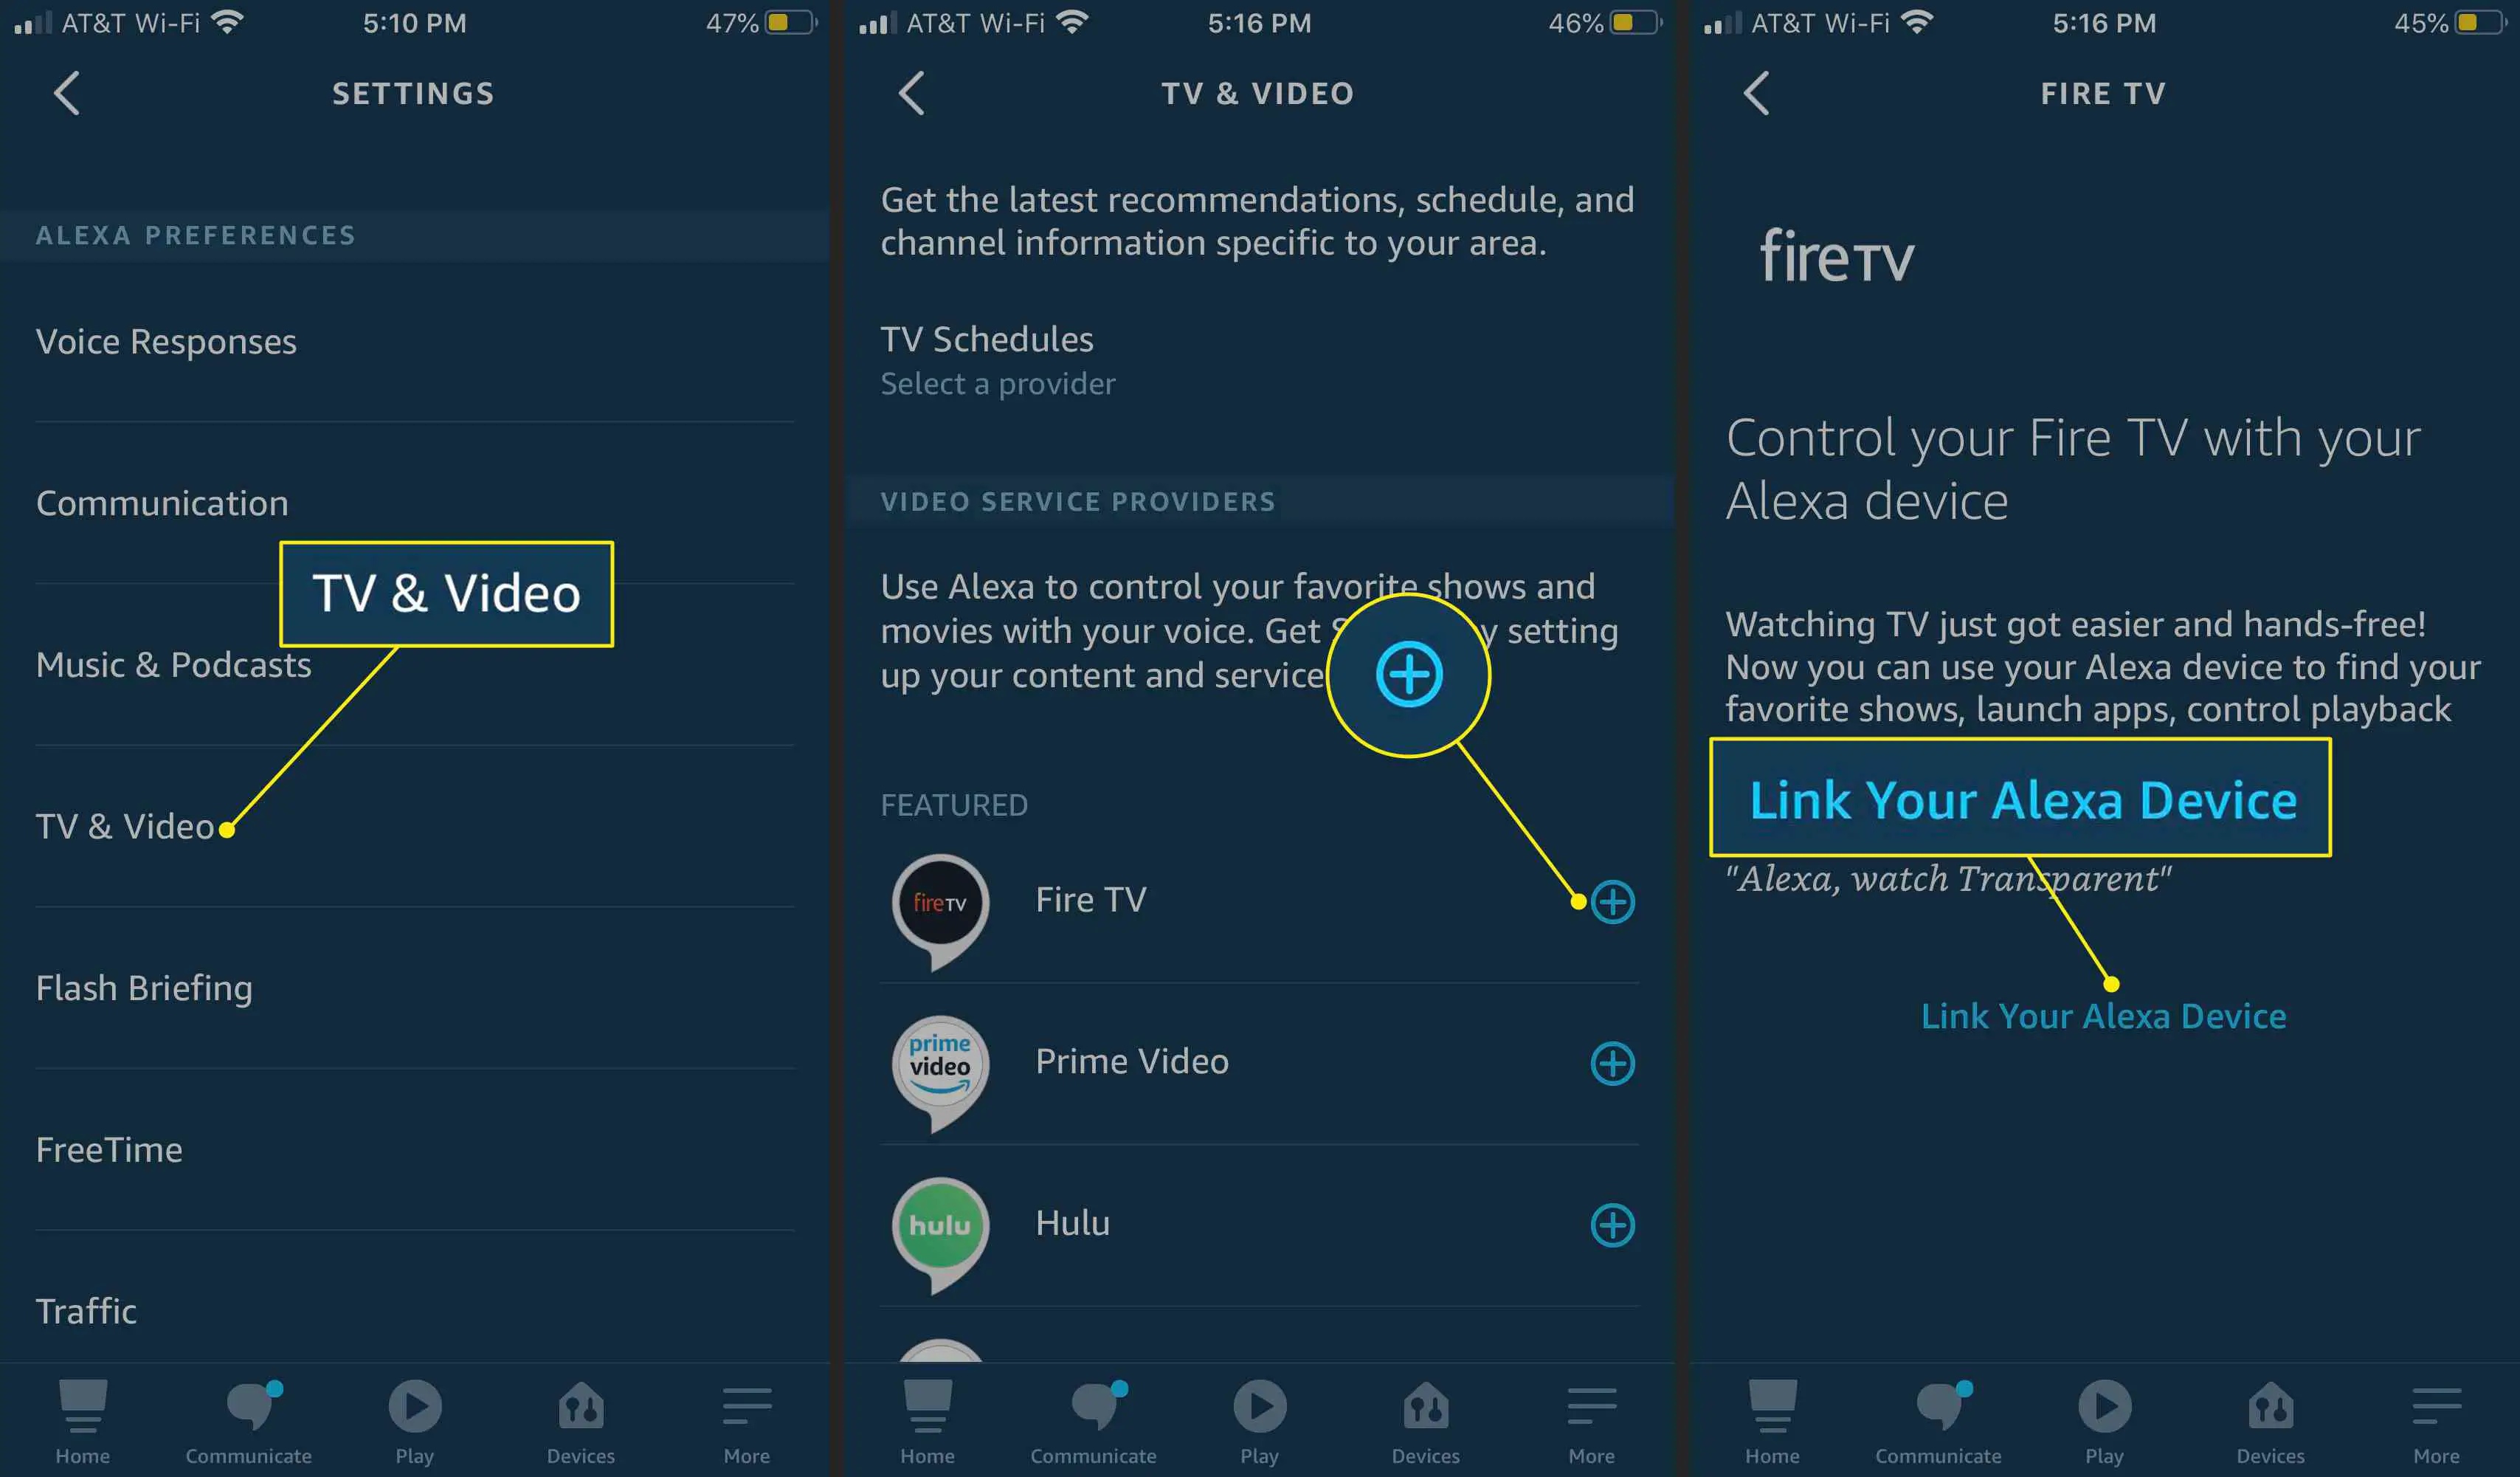 TV e vídeo, Fire TV e "Link Your Alexa Device" no aplicativo